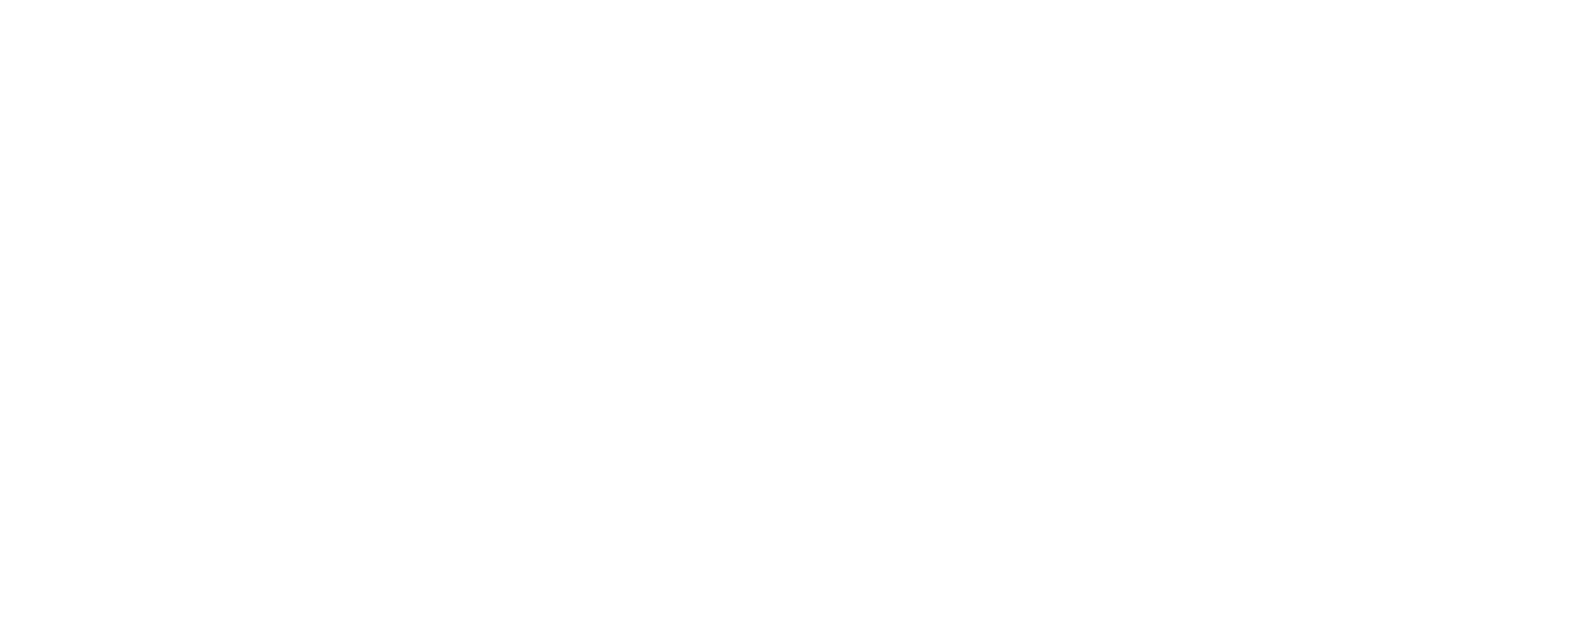 Telenor logo large for dark backgrounds (transparent PNG)